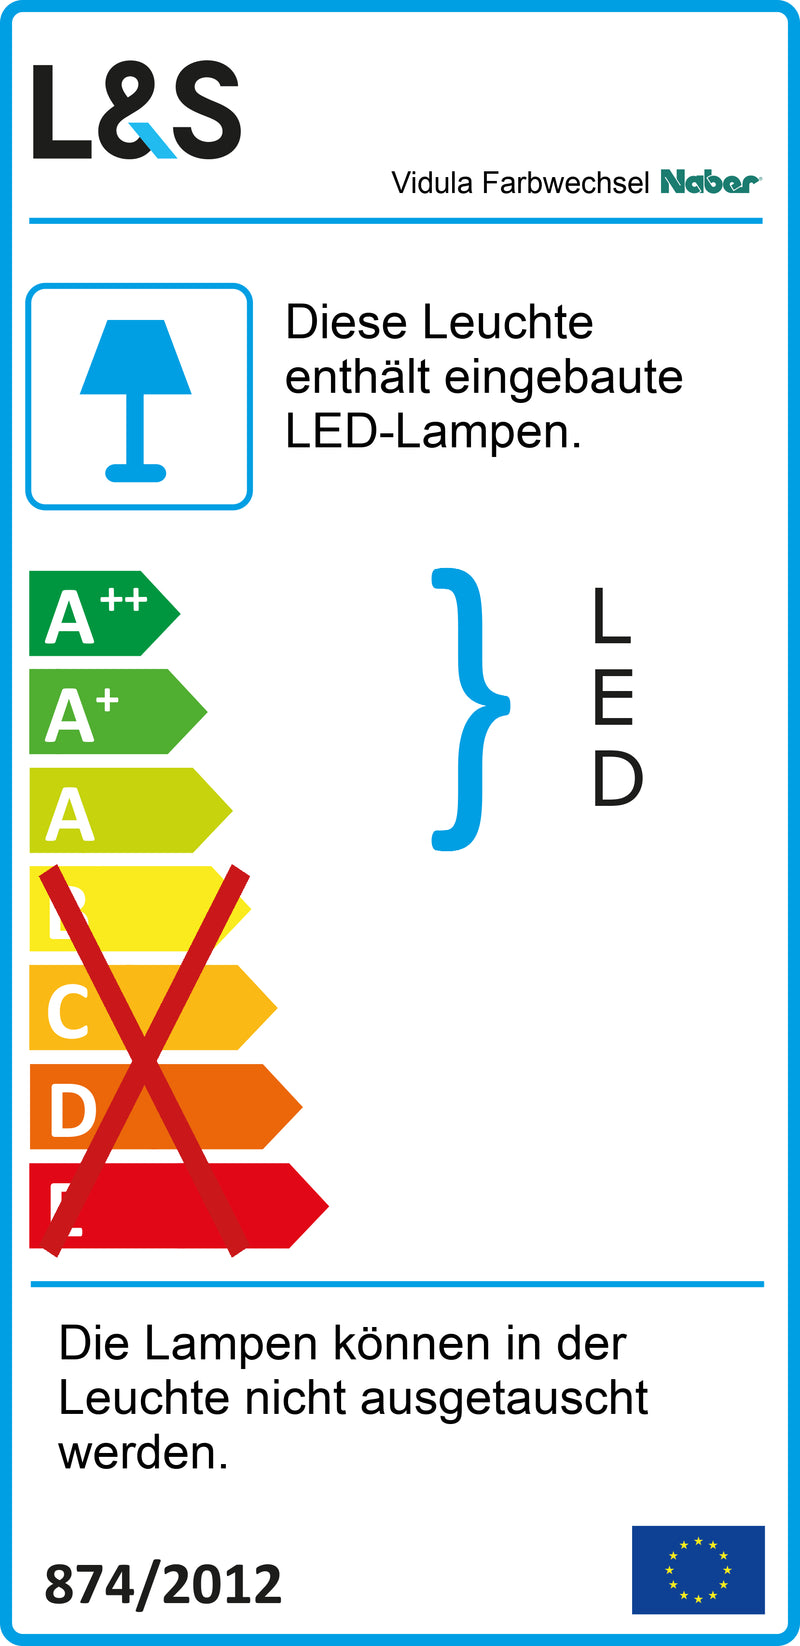 E-Label zu Zeichnung zu Vidula Farbwechsel LED als Variante L 1500 mm, edelstahlfarbig von Naber GmbH in der Kategorie Lichttechnik in Österreich auf conceptshop.at